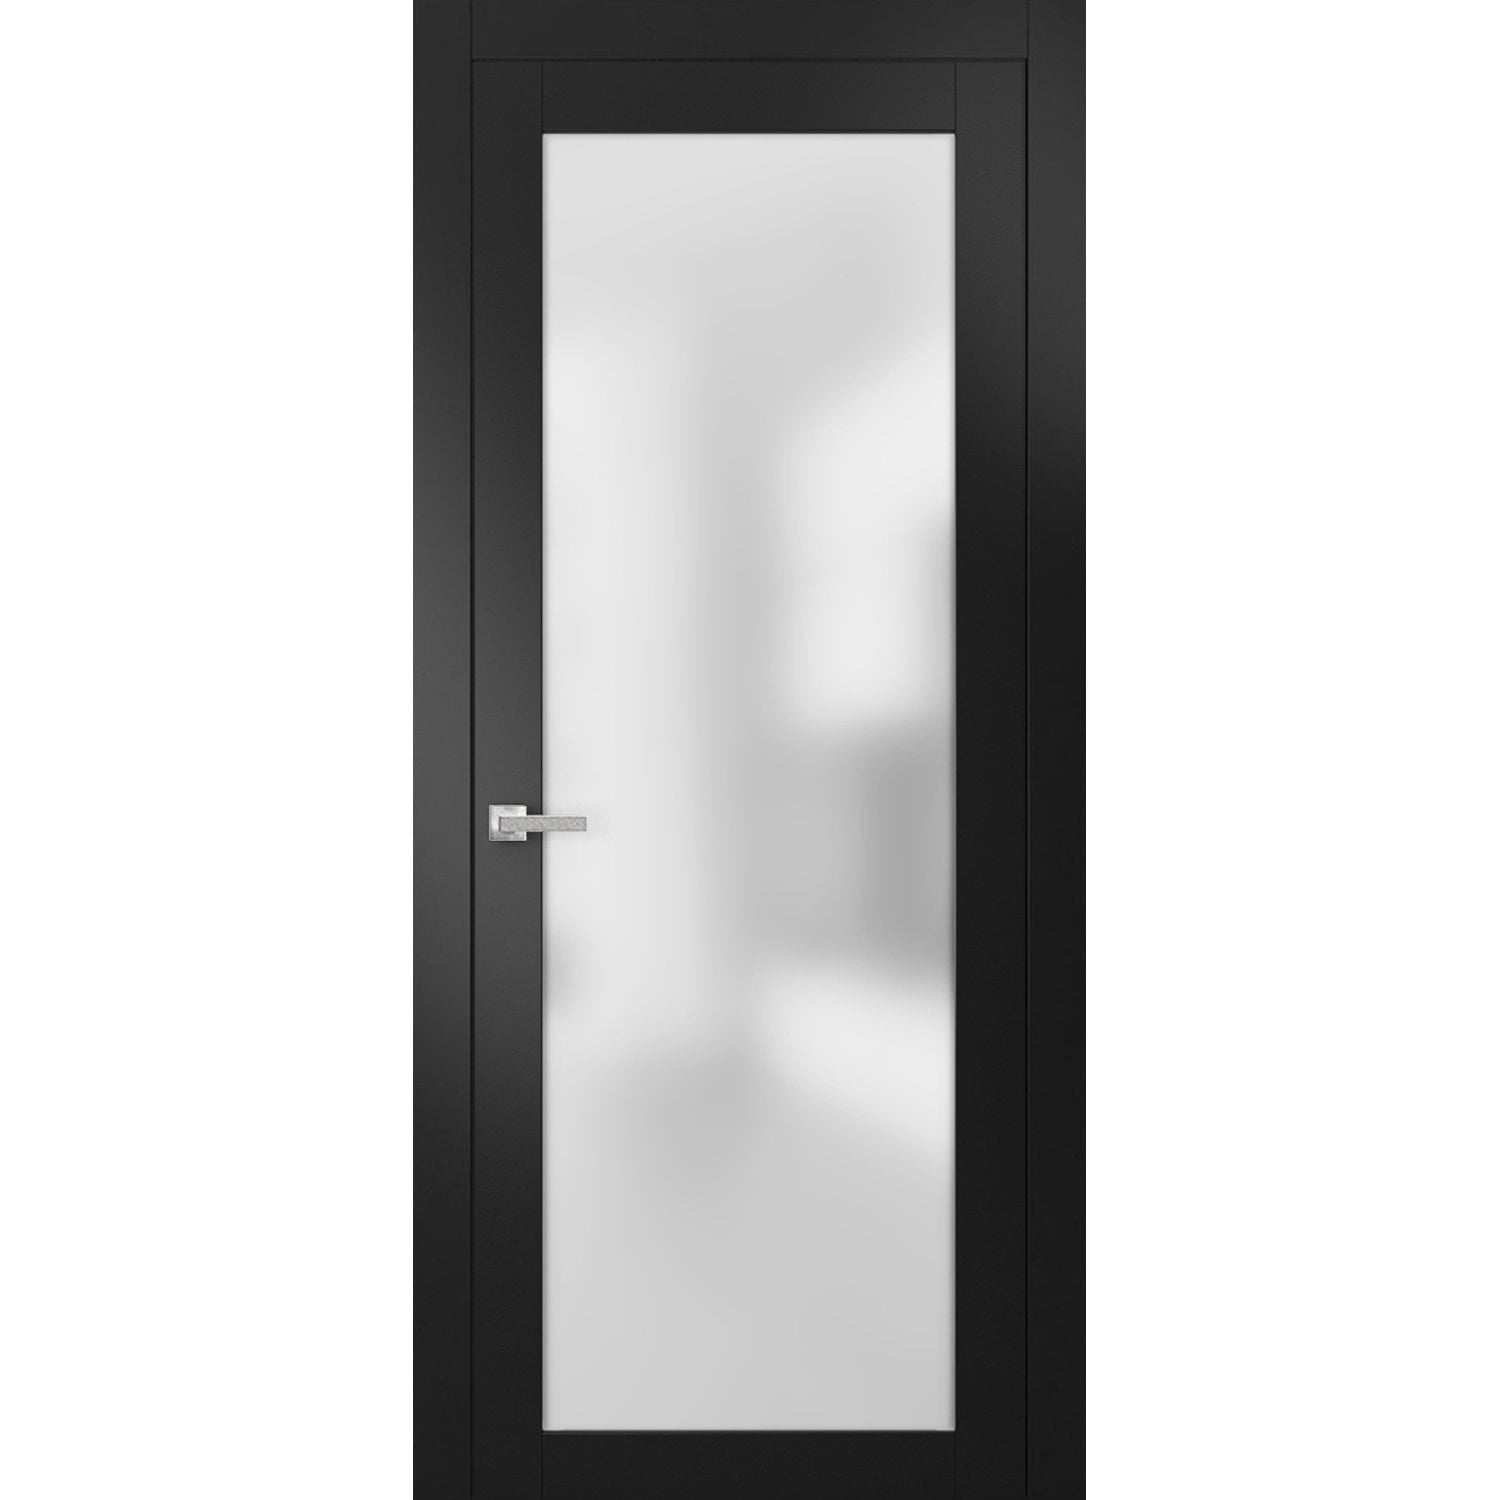 Decorative Glass for Doors | Doors of Distinction | 01322 667525